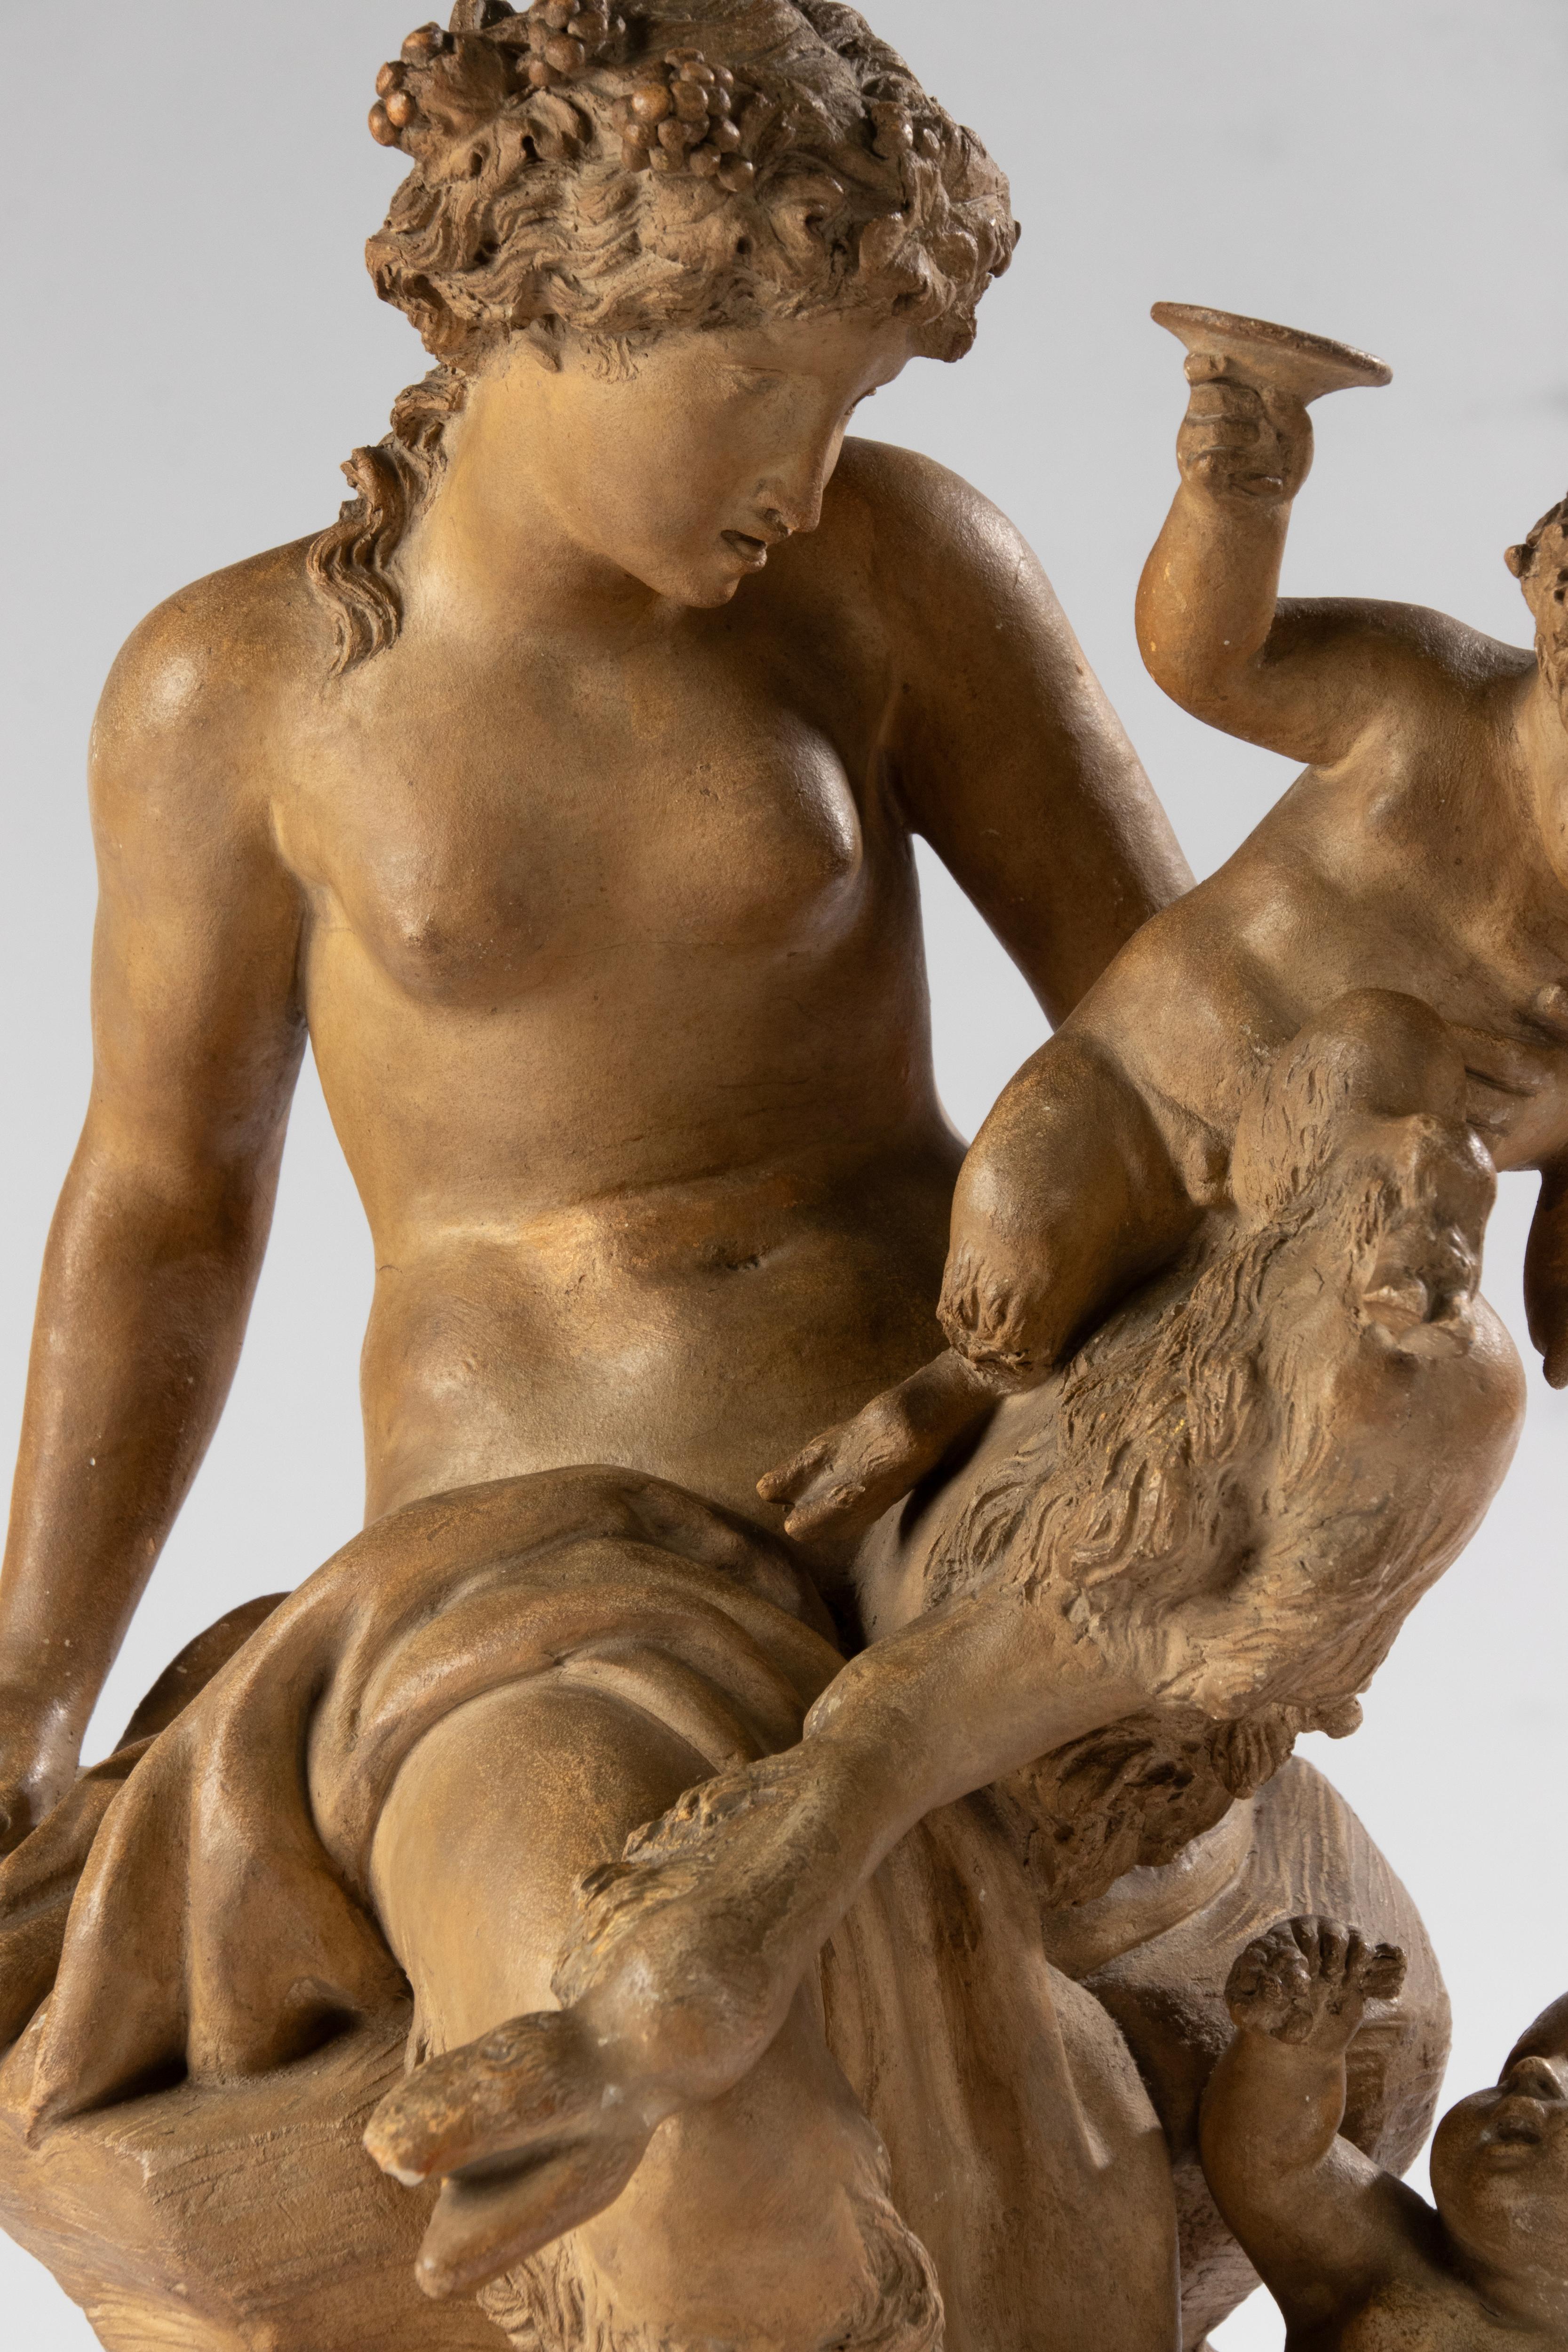 Belle sculpture mythologique française en terre cuite, d'après Clodion (Claude Michel Clodion 1738 - 1814), représentant une jeune femme faune/satyre jouant avec deux chérubins Bacchante, dont l'un tient un gobelet, entourés de feuilles de vigne.